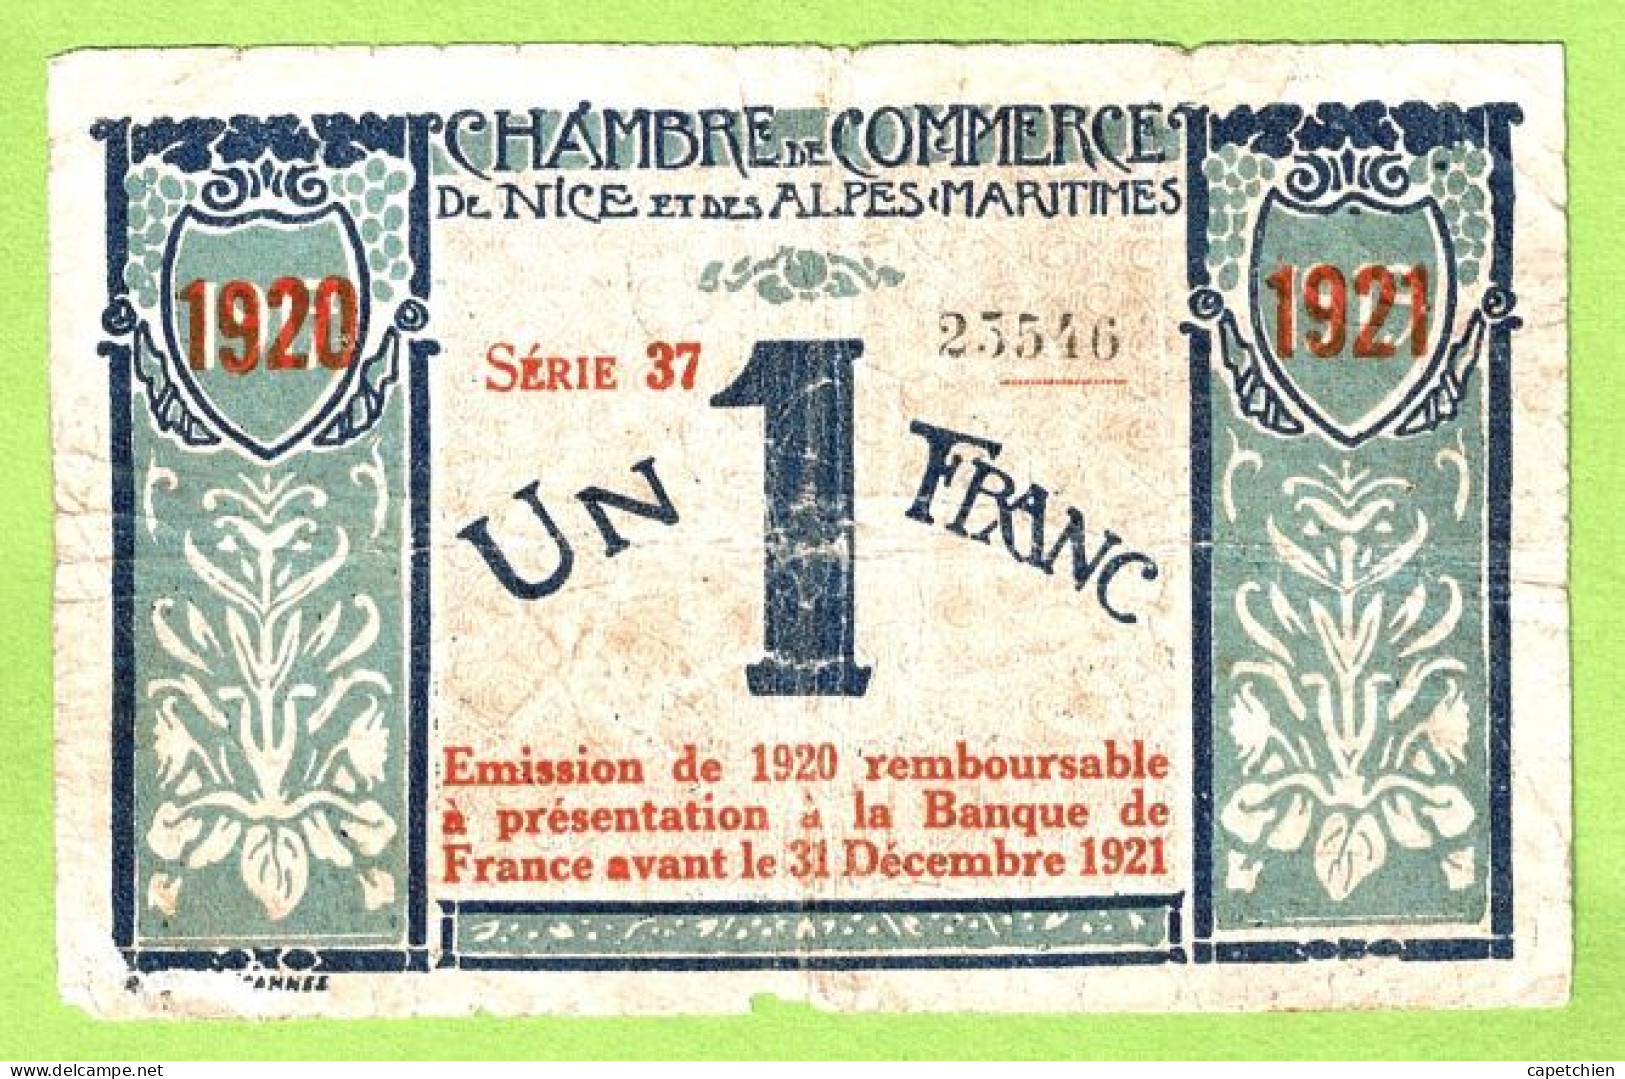 FRANCE / CHAMBRE De COMMERCE / NICE - ALPES MARITIMES / 1 FRANC / 1917-1919 SURCHARGE ROUGE 1920-1921 / N° 23546 / S 37 - Chambre De Commerce